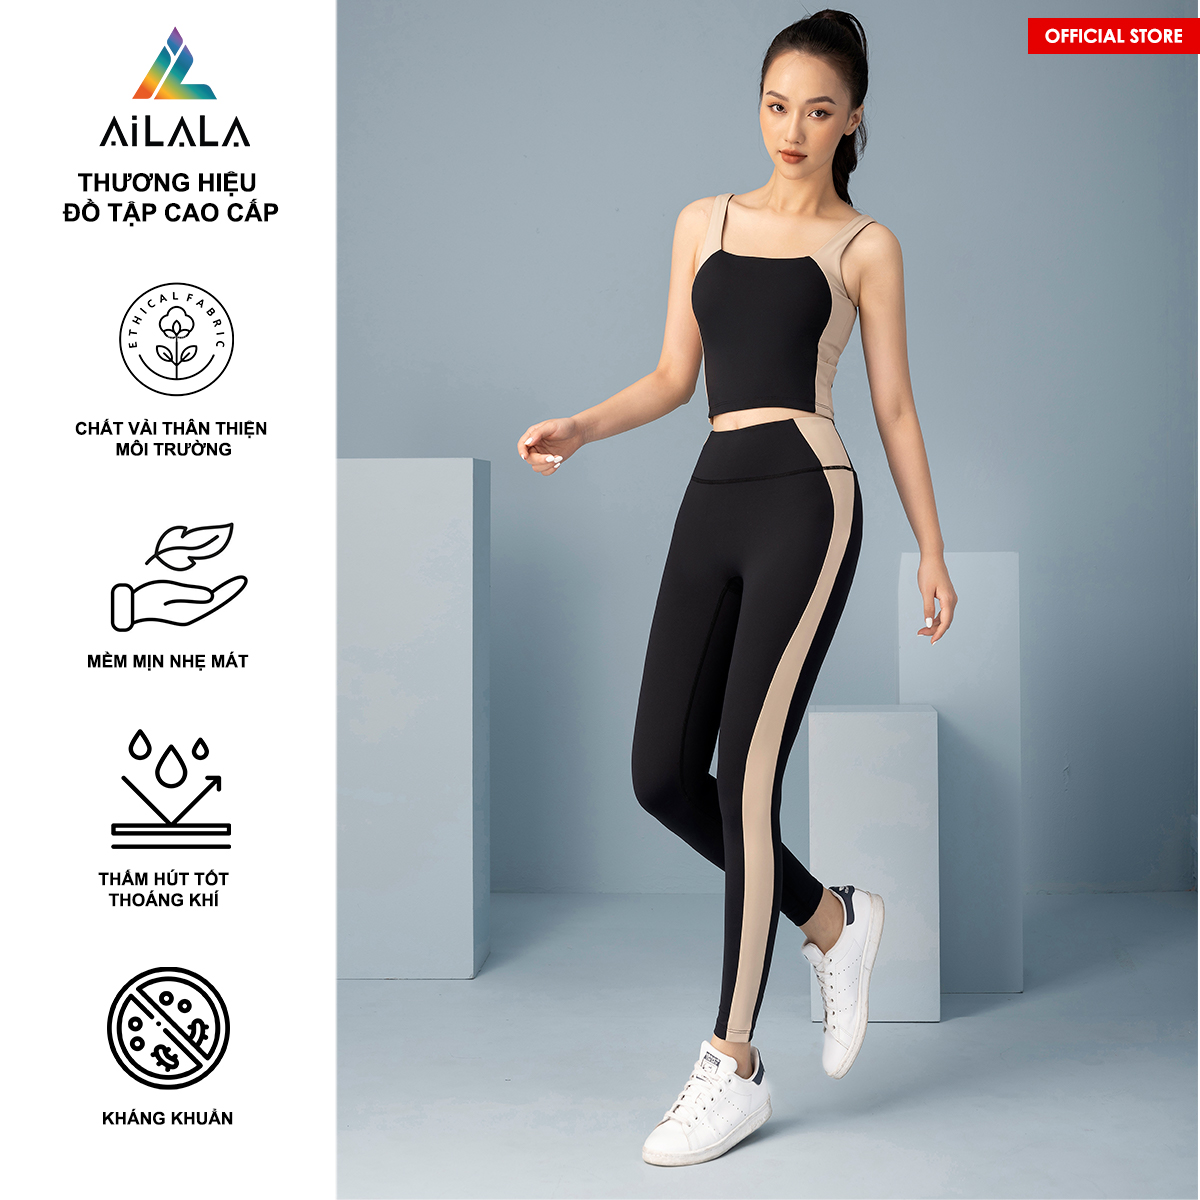 Bộ quần áo thể thao nữ AiLALA LUX16A, Đồ tập Yoga Gym Pilates, chất vải Hi-tech cao cấp